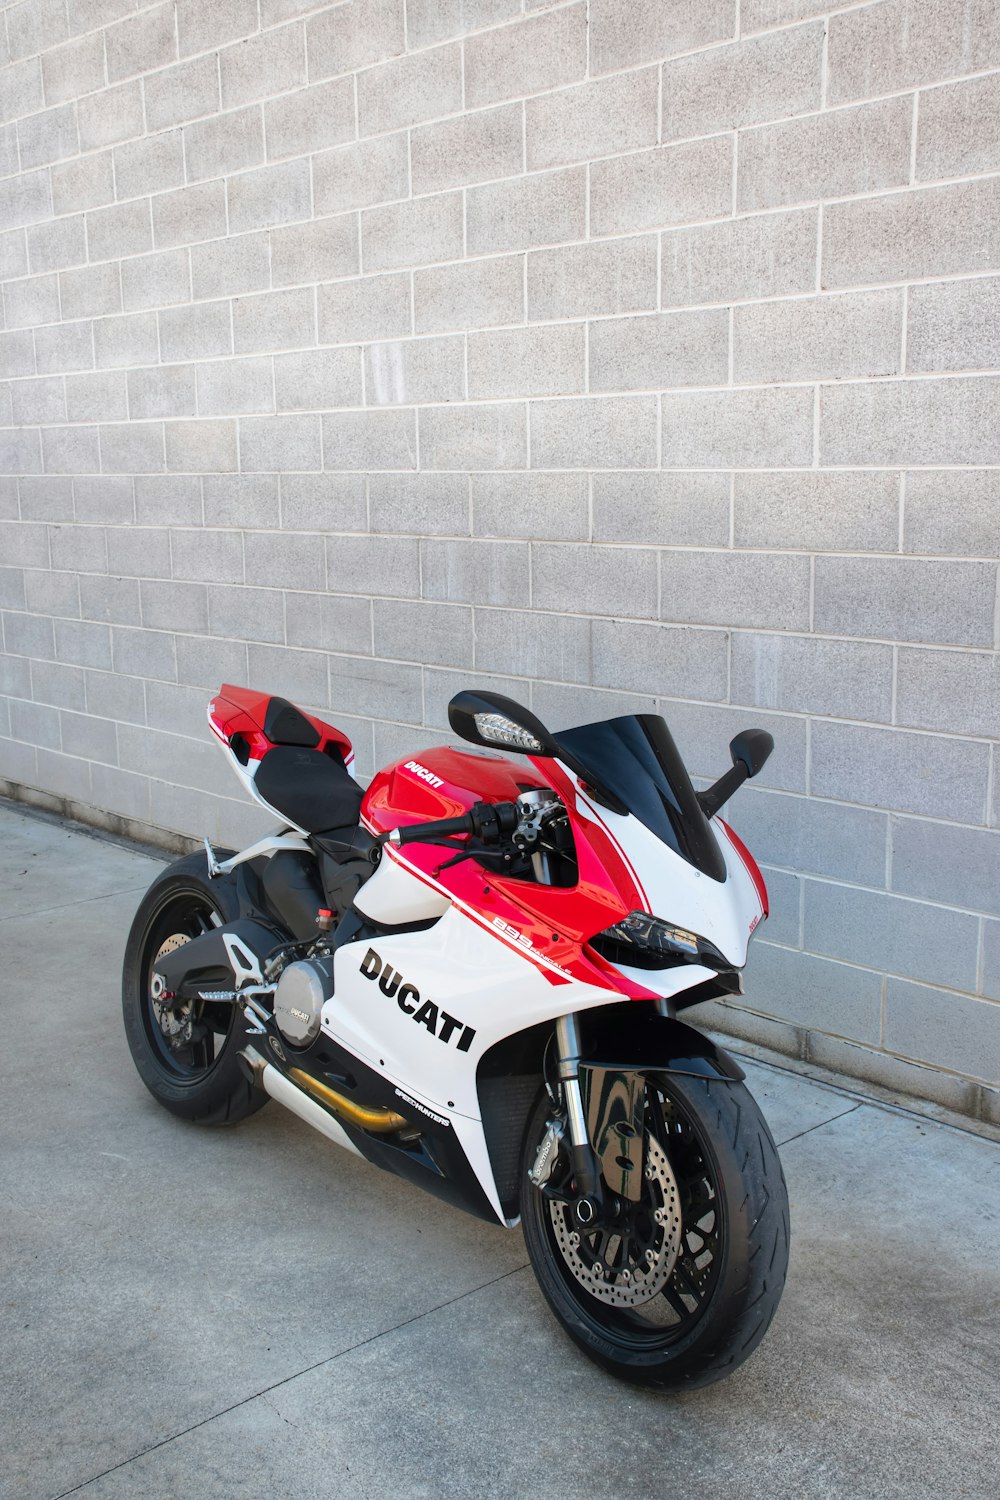 Motocicleta deportiva Honda roja y blanca estacionada junto a la pared blanca